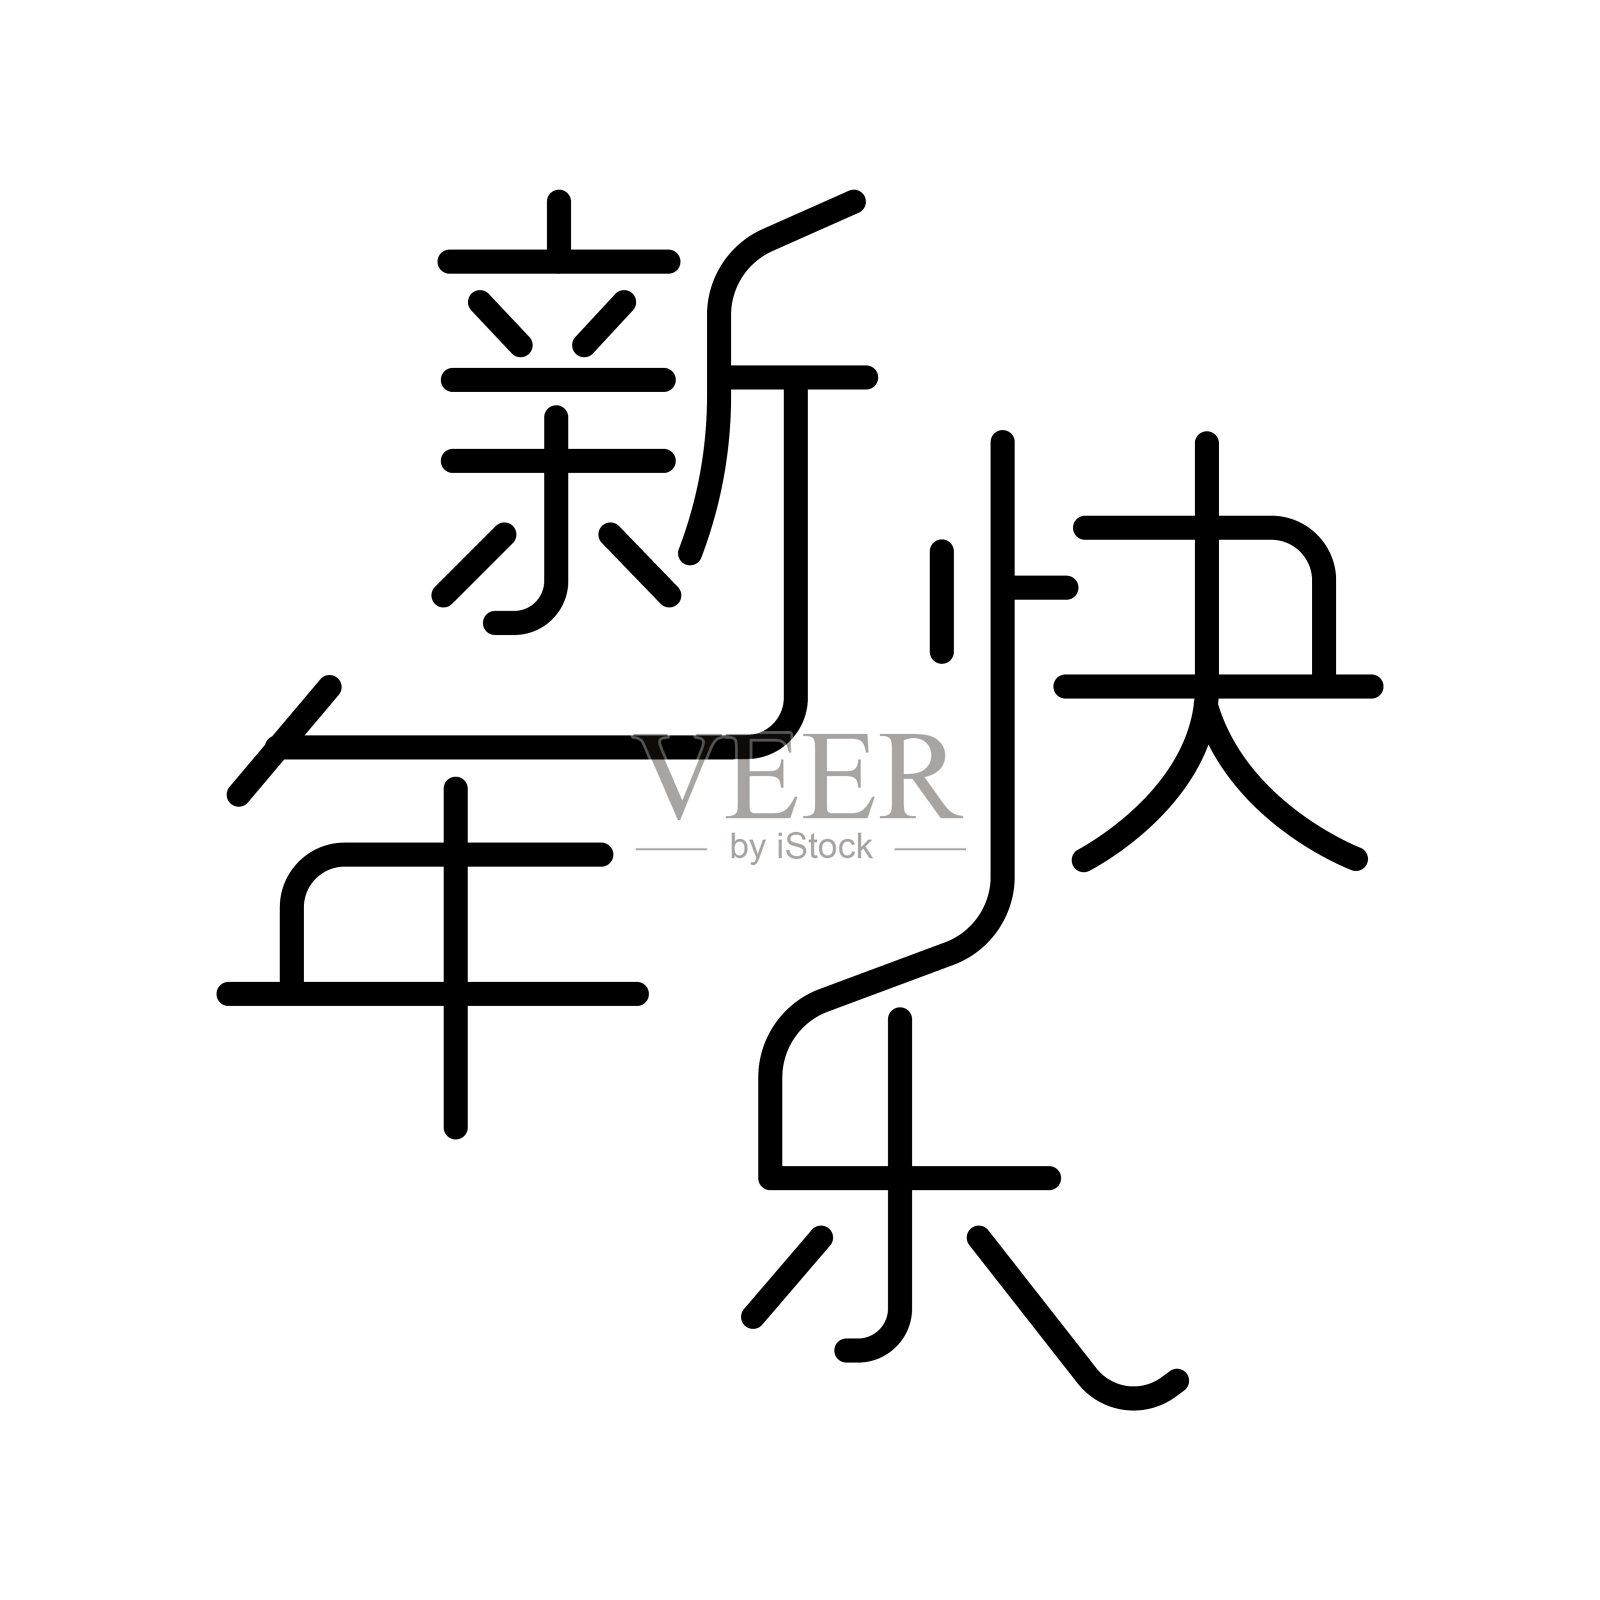 中国汉字“新年快乐”，意味着新年快乐。设计模板素材